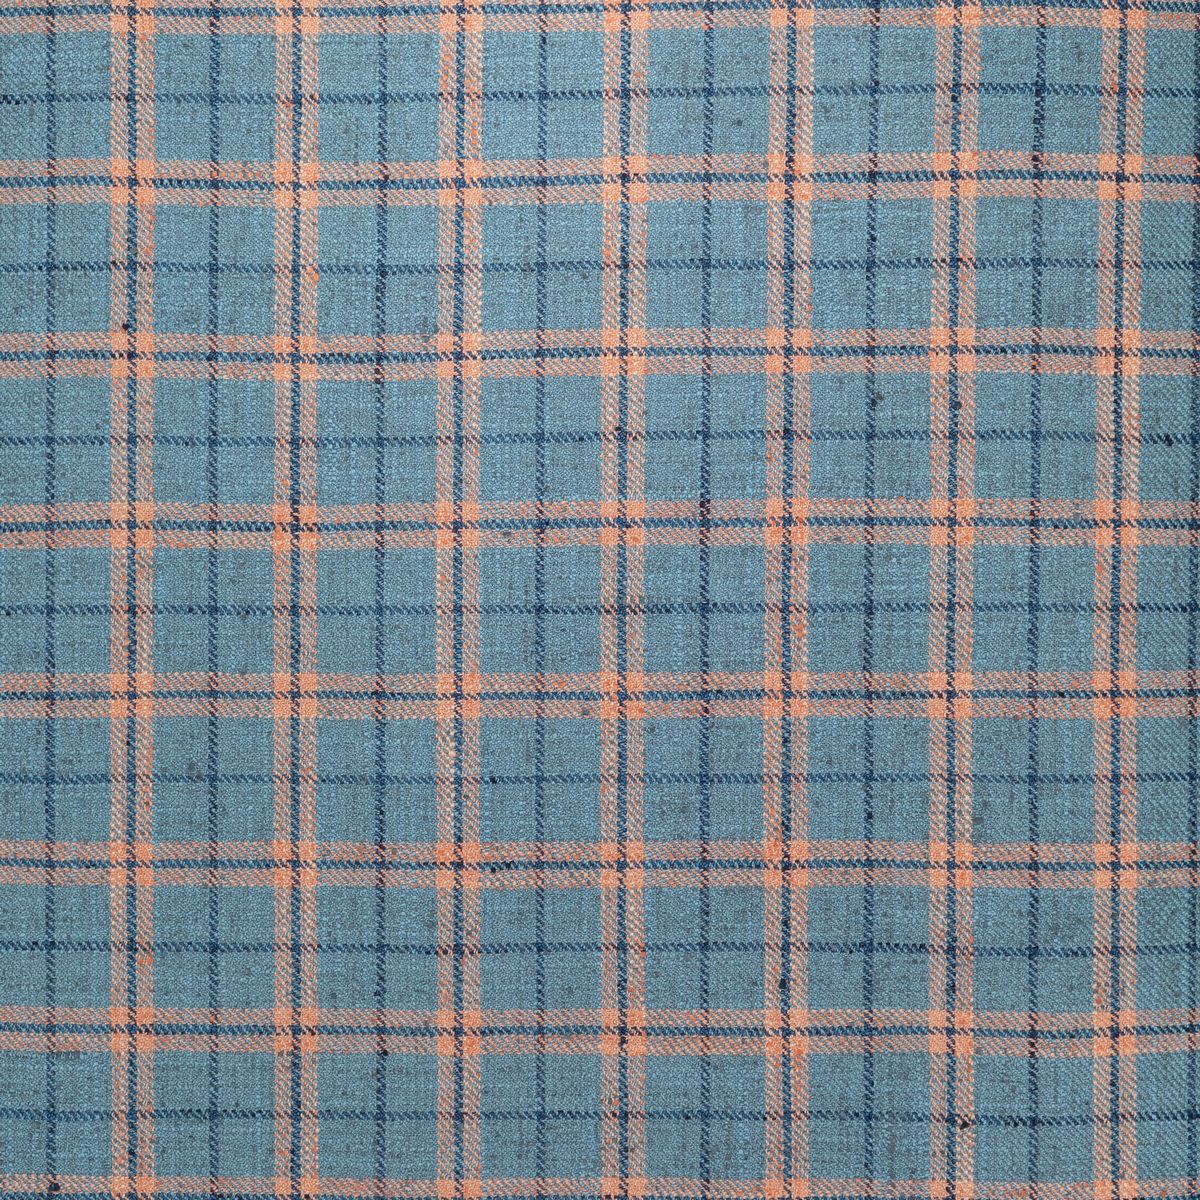 Painswick Cornflower Fabric by Voyage Maison